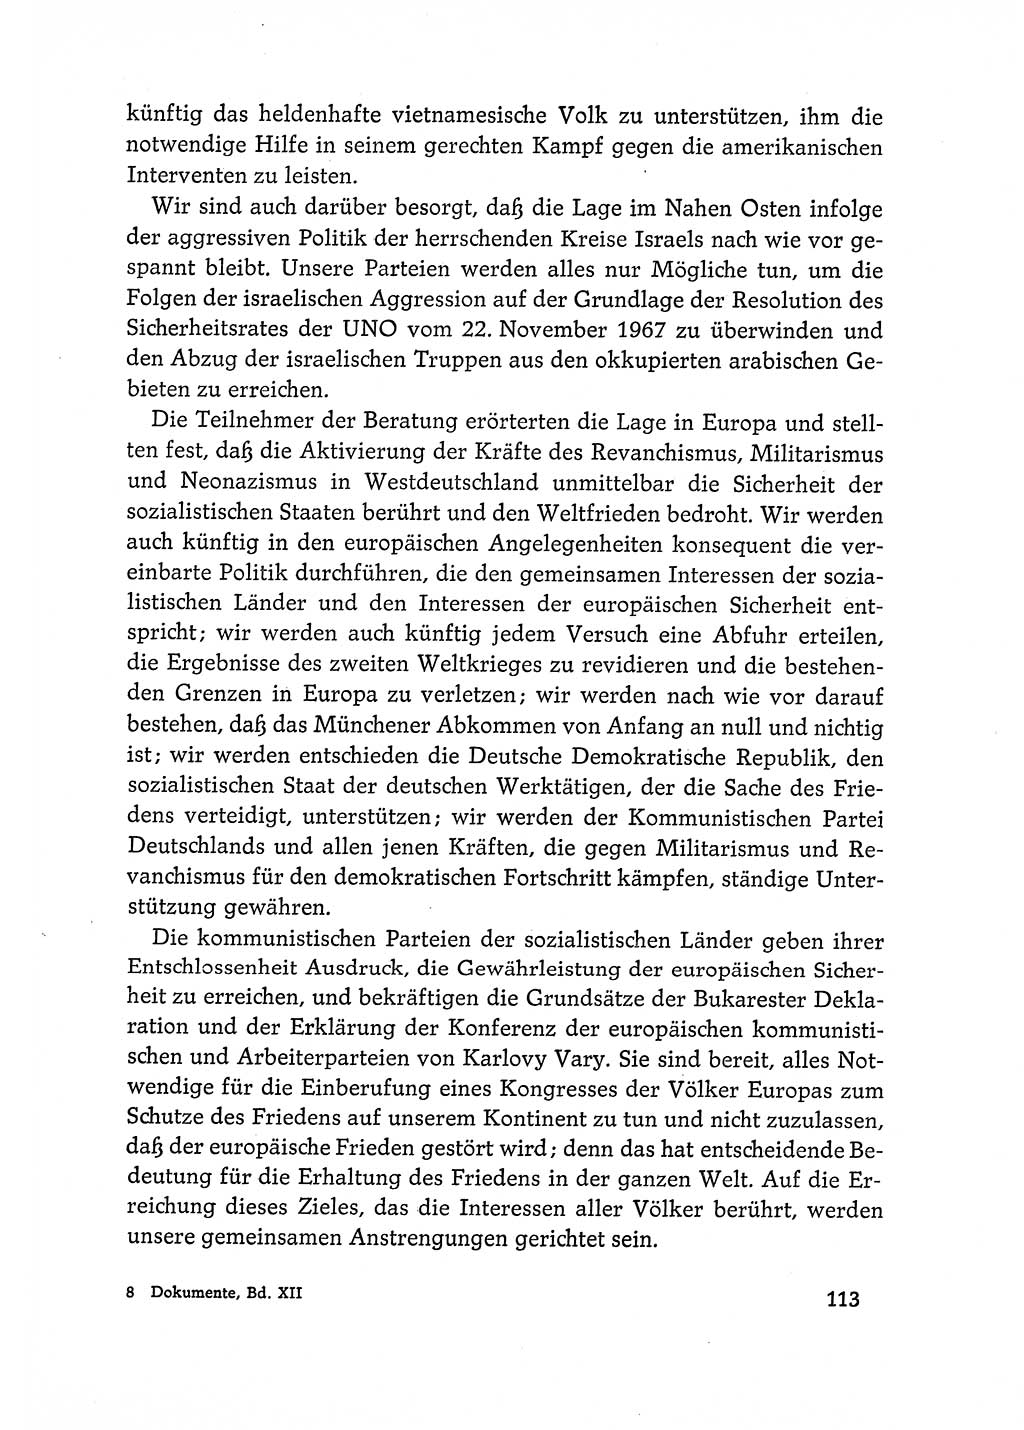 Dokumente der Sozialistischen Einheitspartei Deutschlands (SED) [Deutsche Demokratische Republik (DDR)] 1968-1969, Seite 113 (Dok. SED DDR 1968-1969, S. 113)